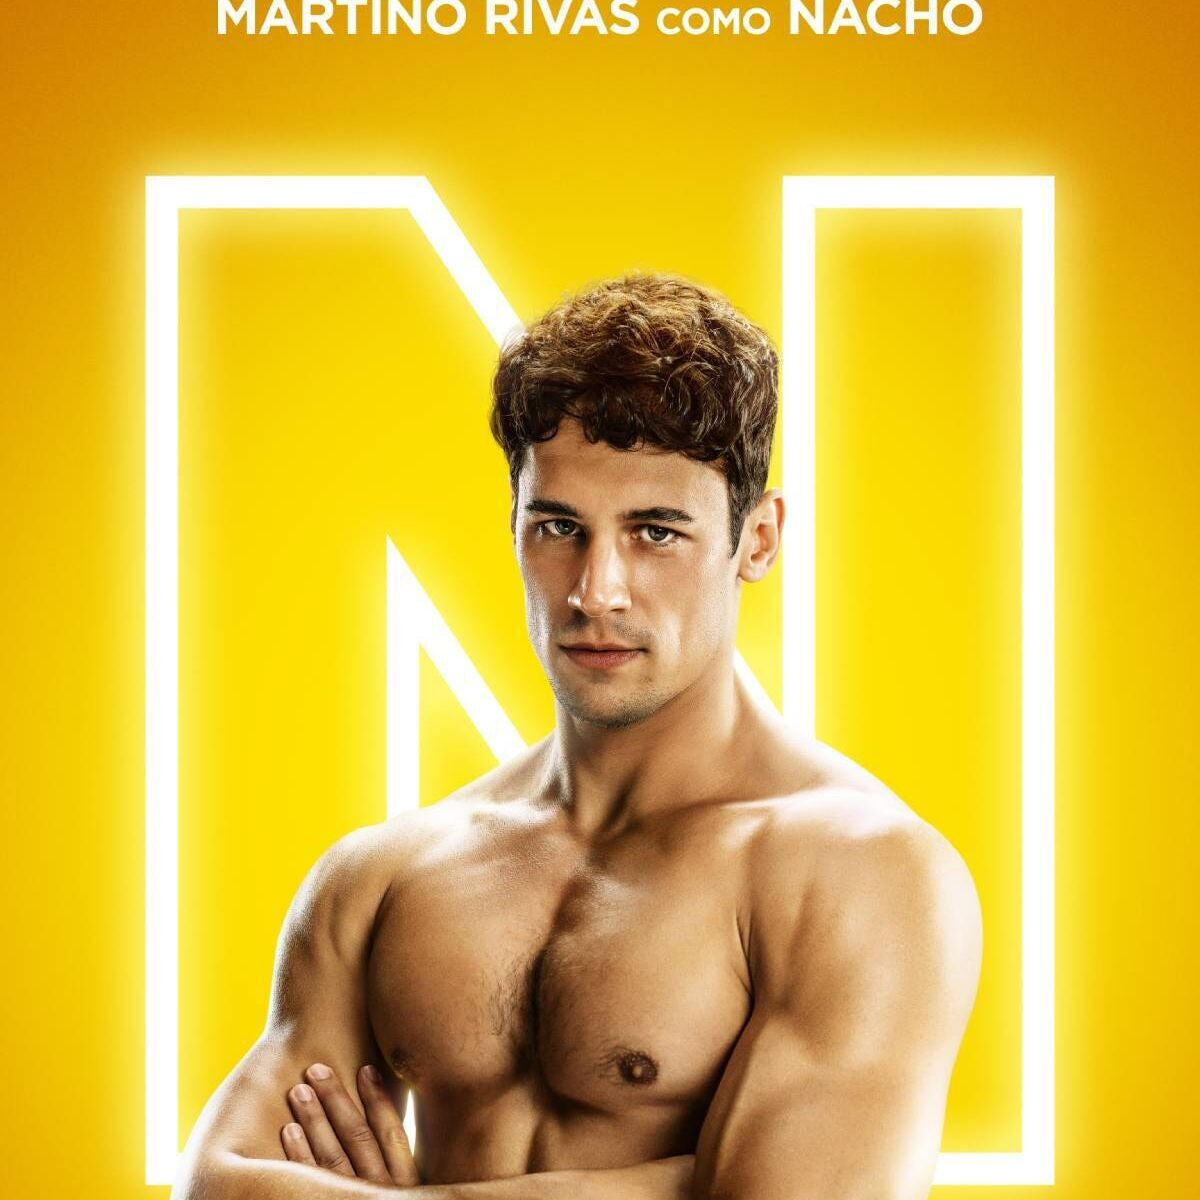 Dónde y cuándo ver Nacho, la serie completa sobre Nacho Vidal protagonizada por Martiño Rivas